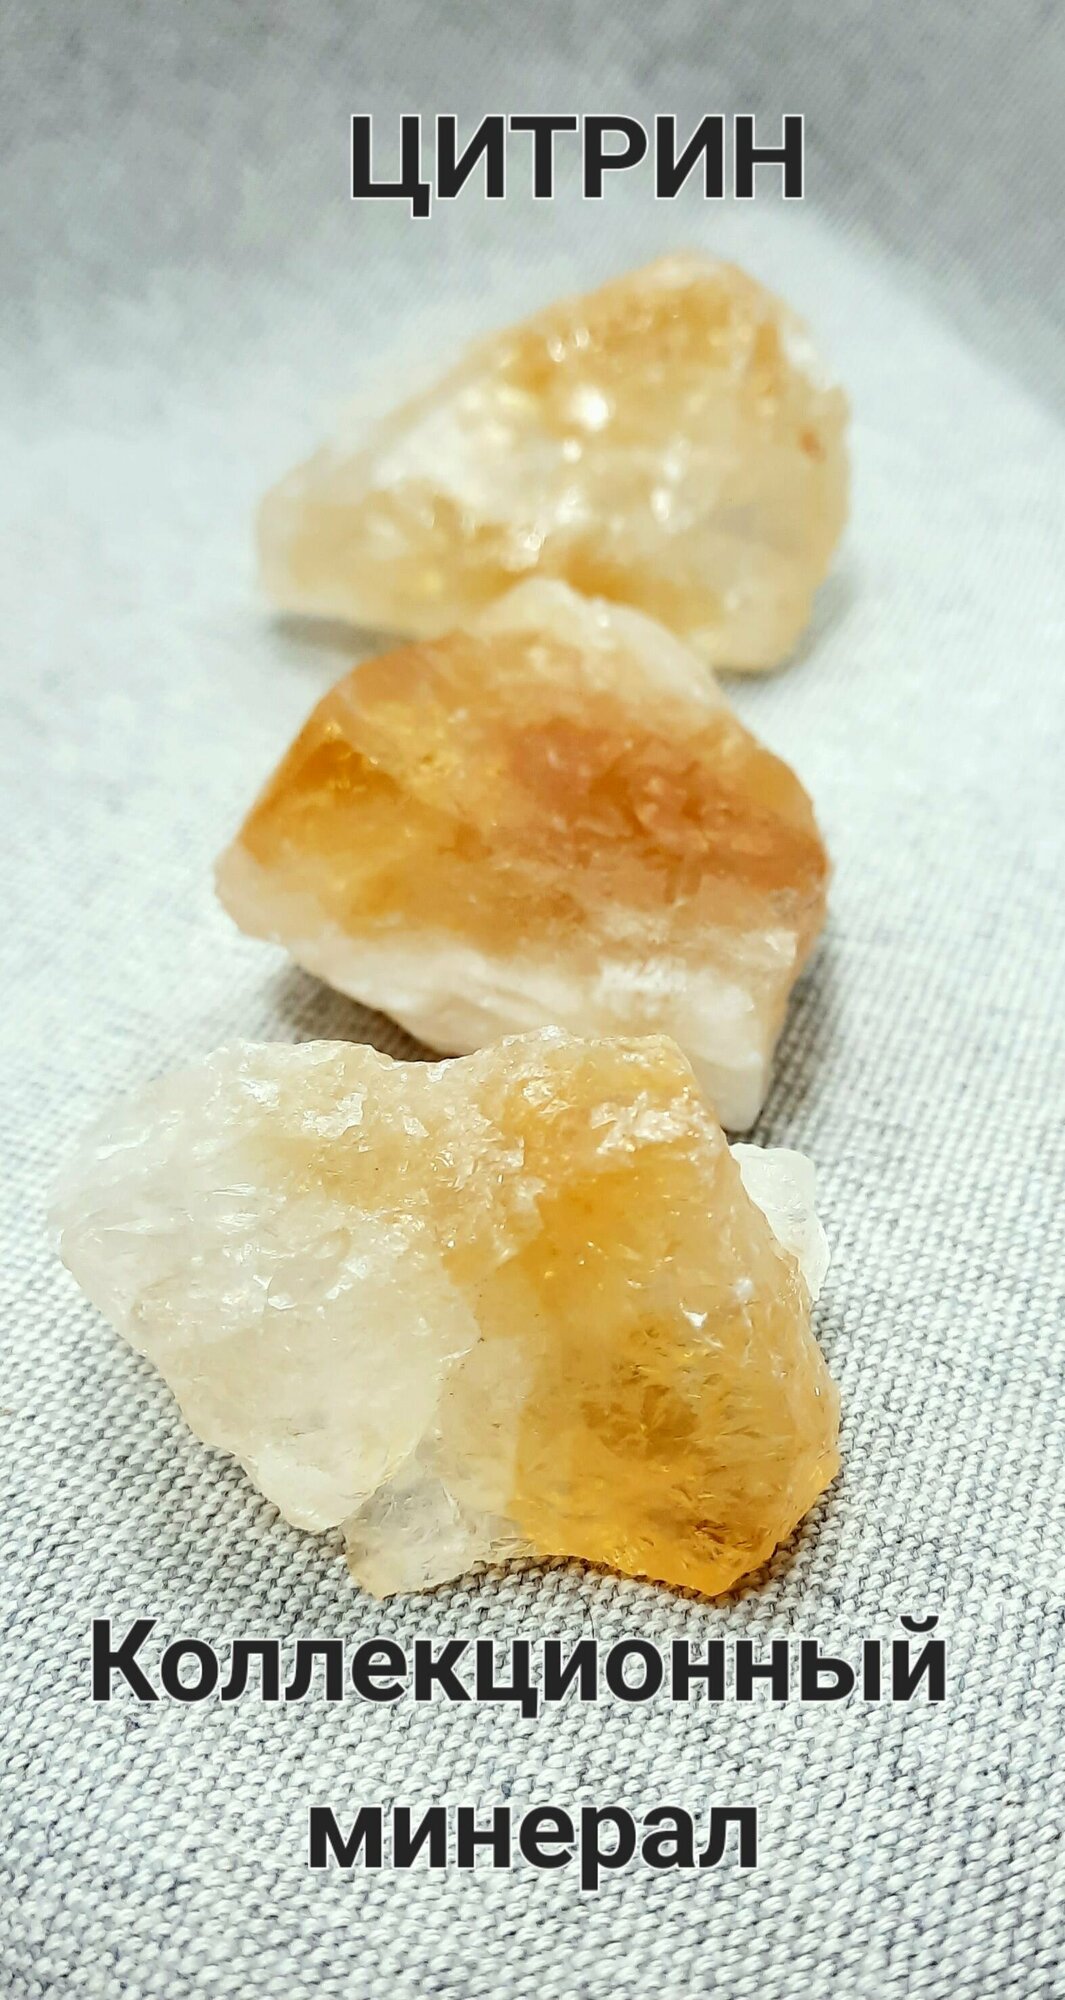 Цитрин натуральный, камень коллекционный(натуральный минерал)